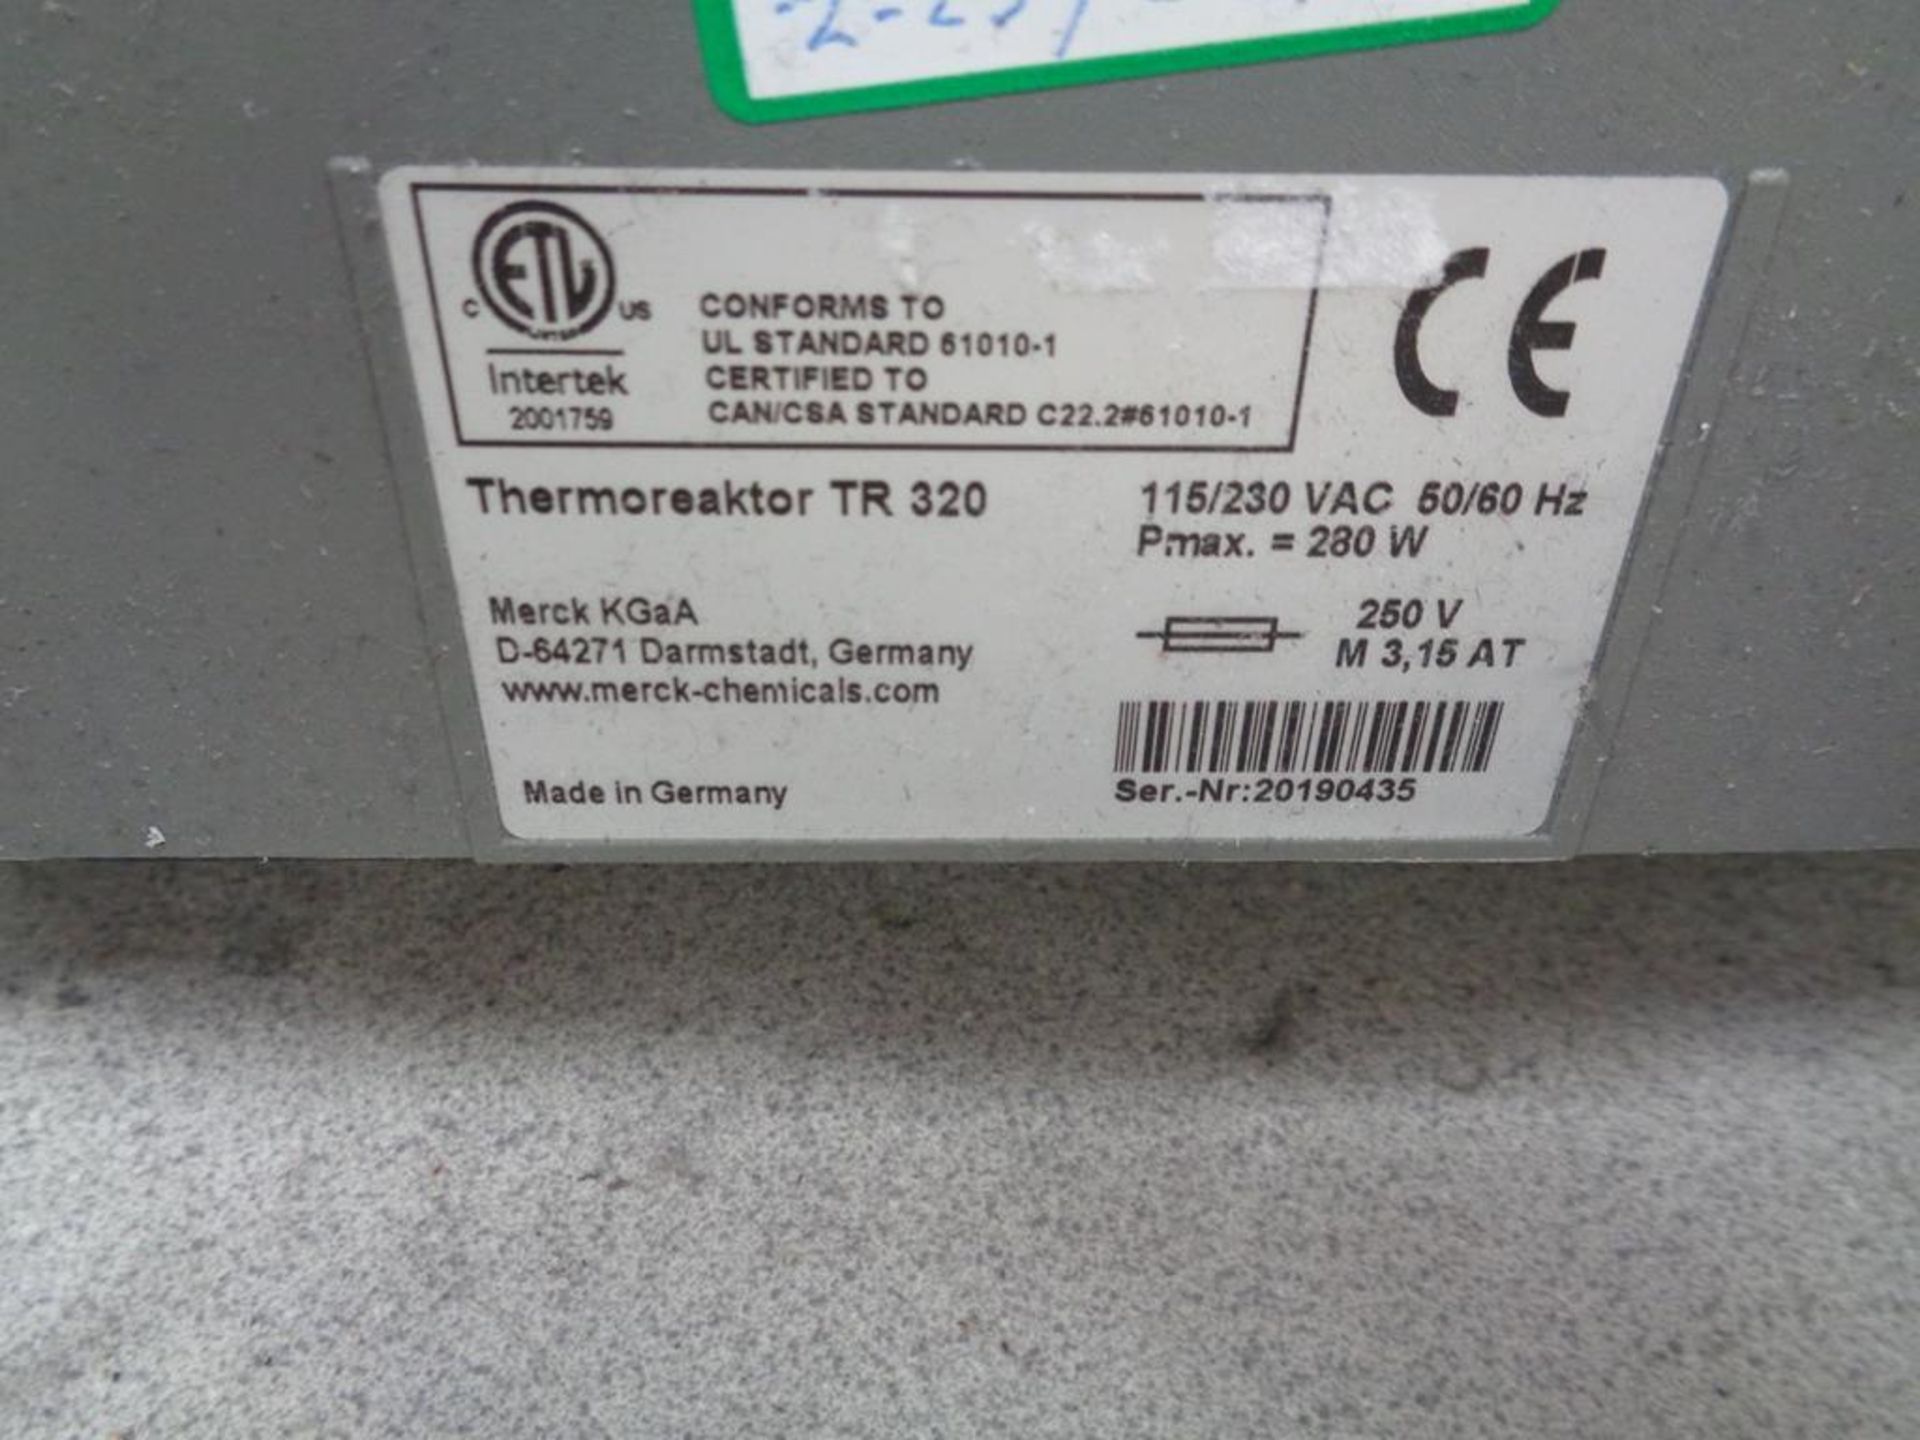 Spectroquant TR320 Thermoreaktor, serial no. 20190435 - Bild 3 aus 4